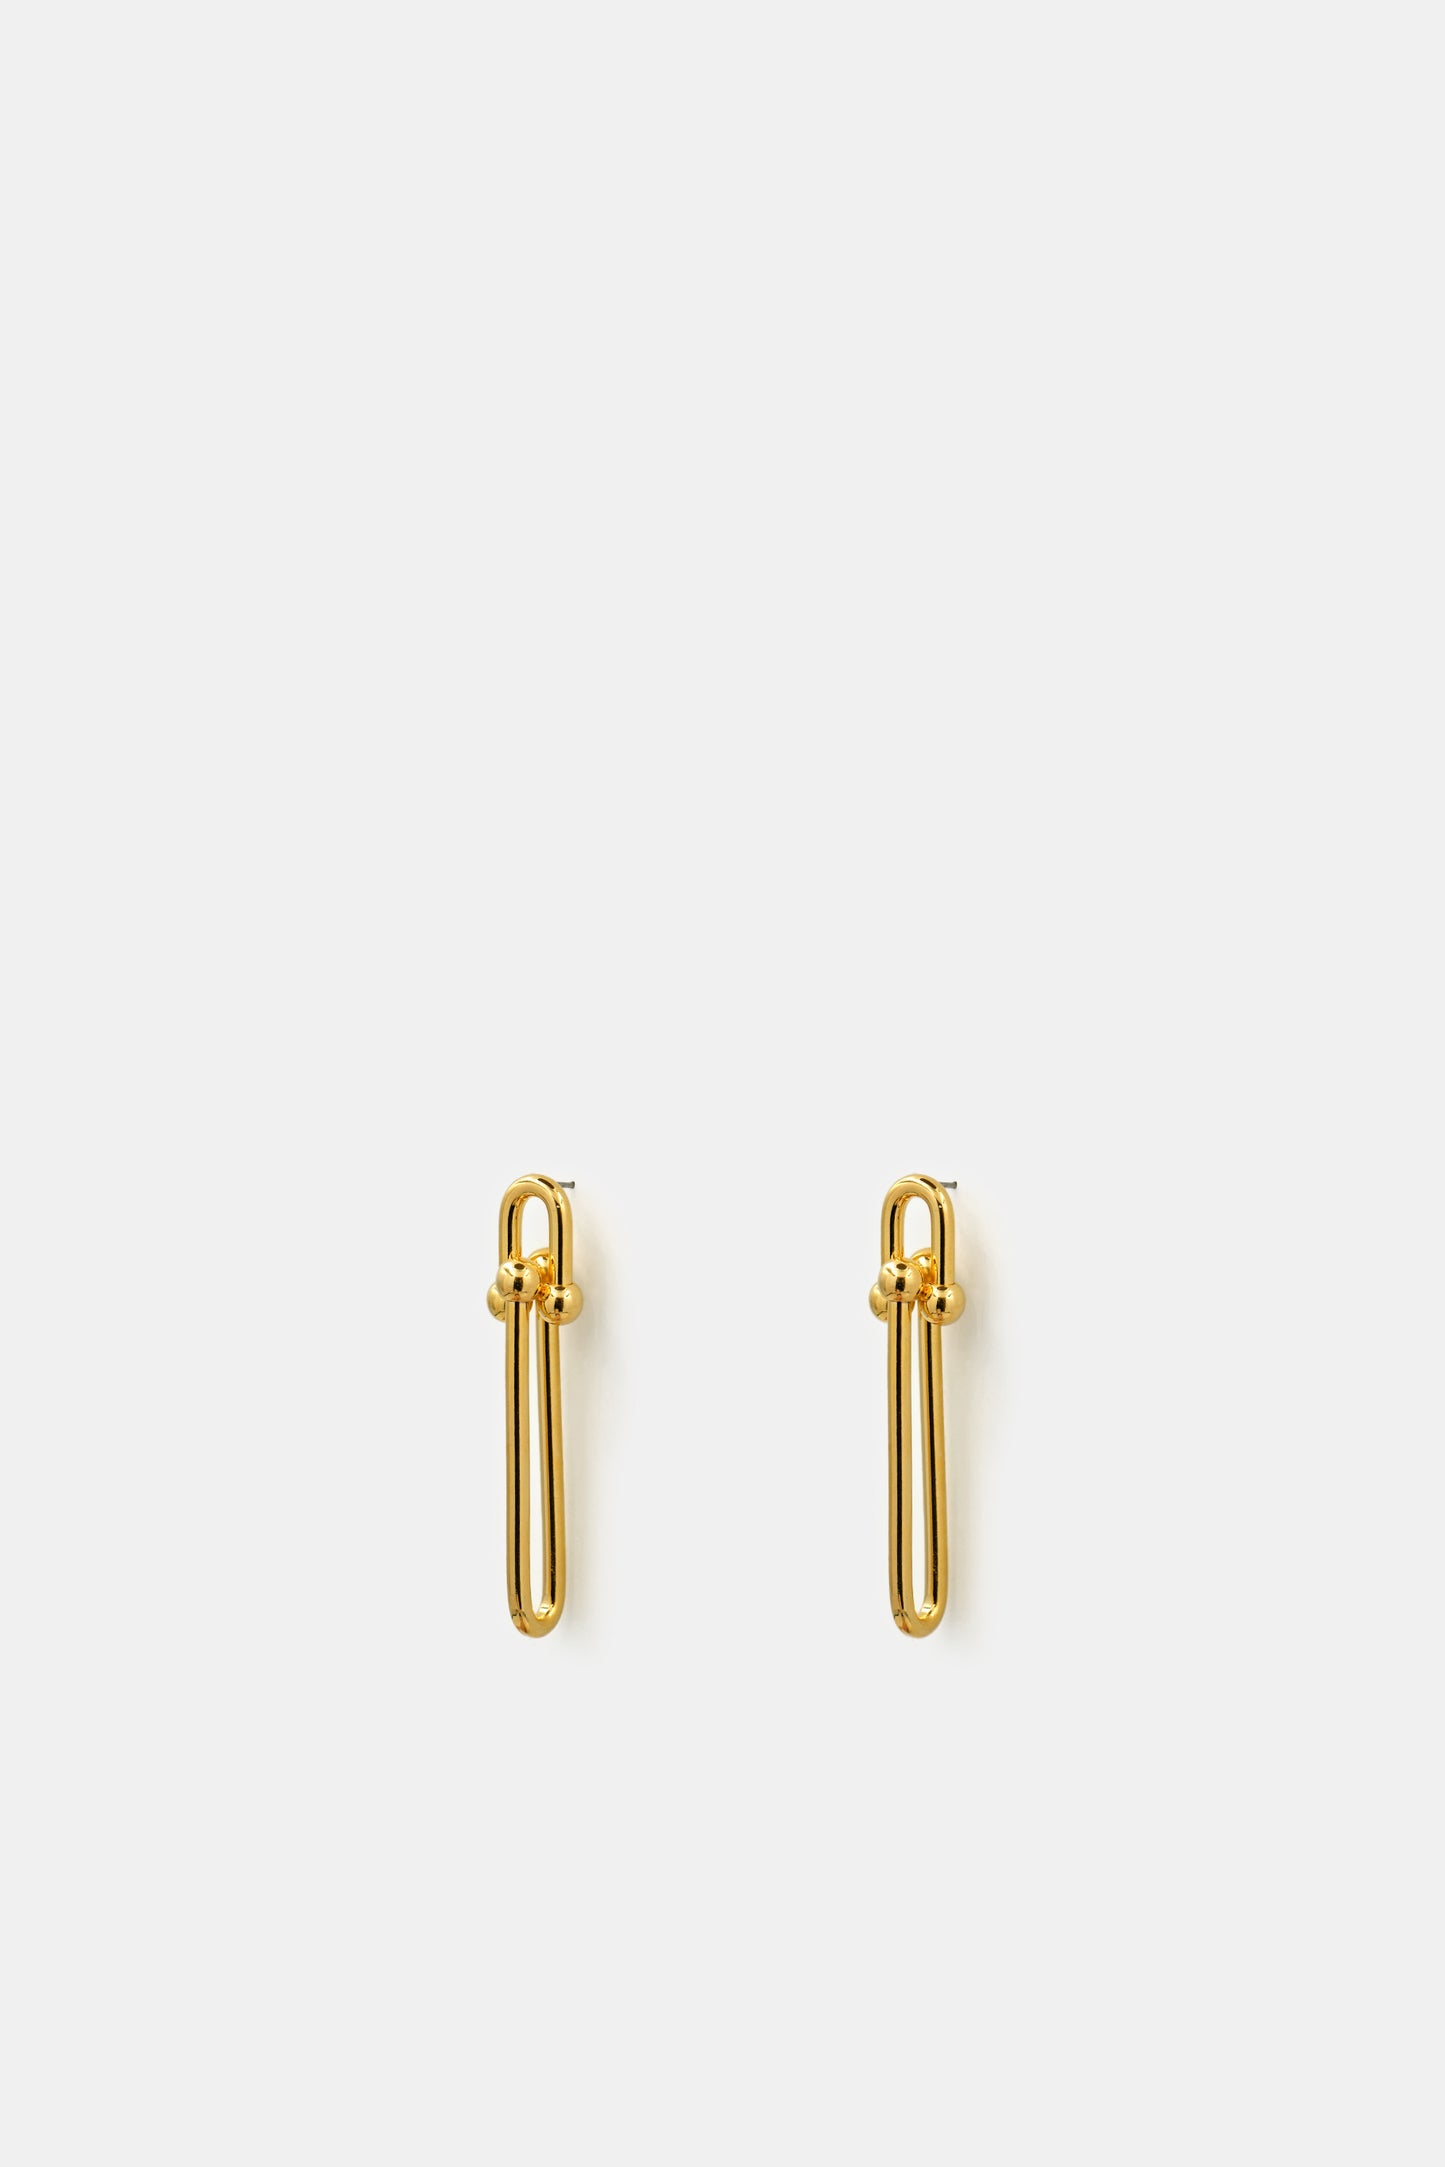 double-link-earrings-glod